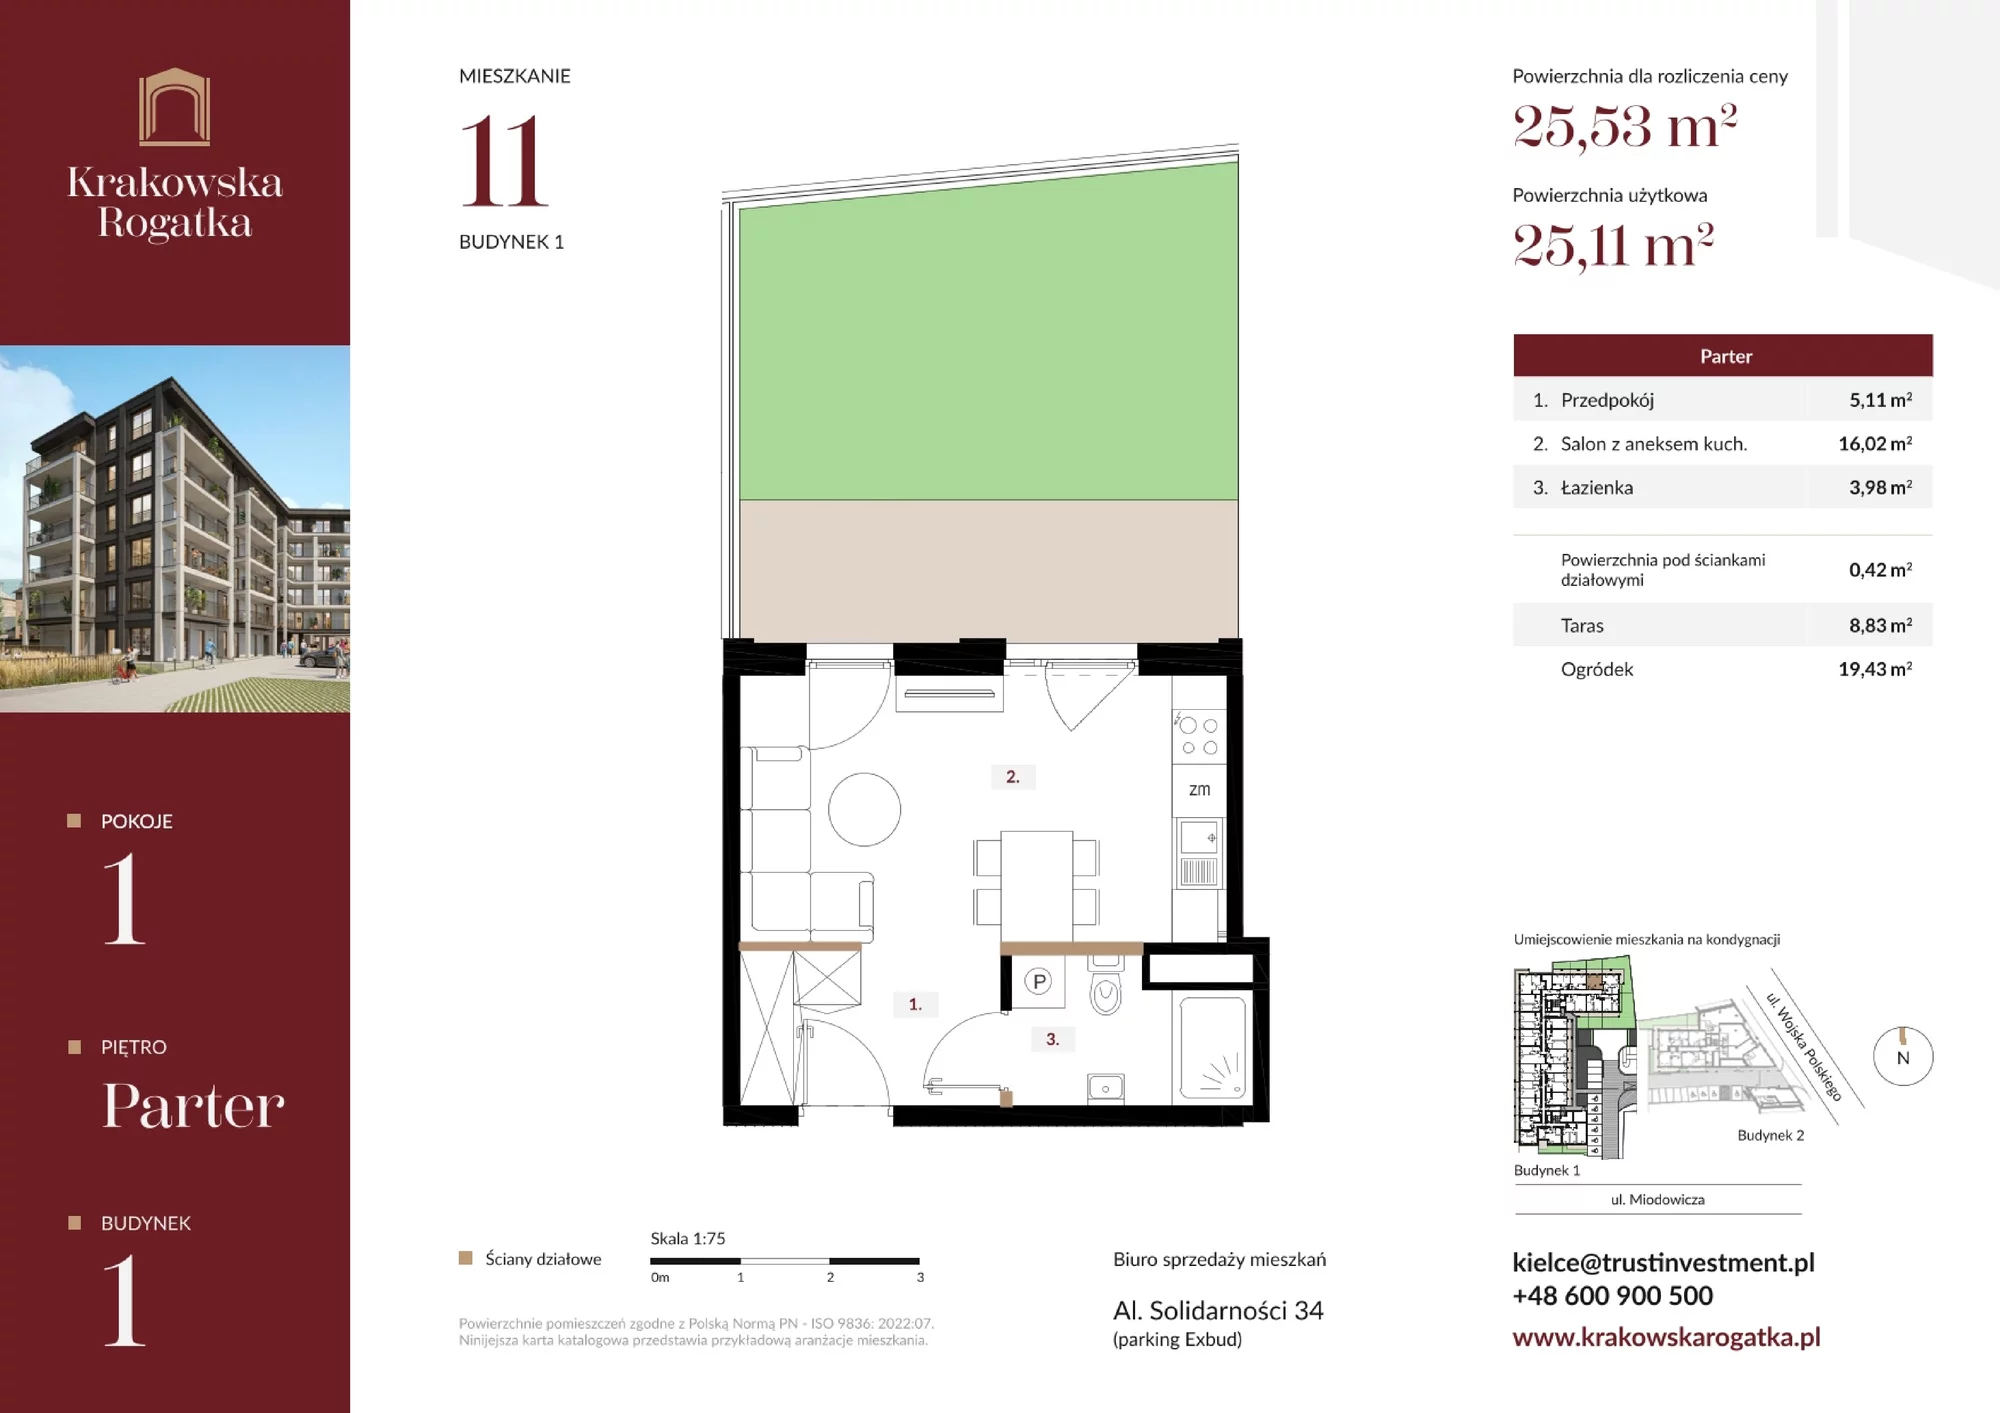 Mieszkanie 25,53 m², parter, oferta nr Budynek 1 Mieszkanie 11, Krakowska Rogatka, Kielce, ul. Miodowicza 1